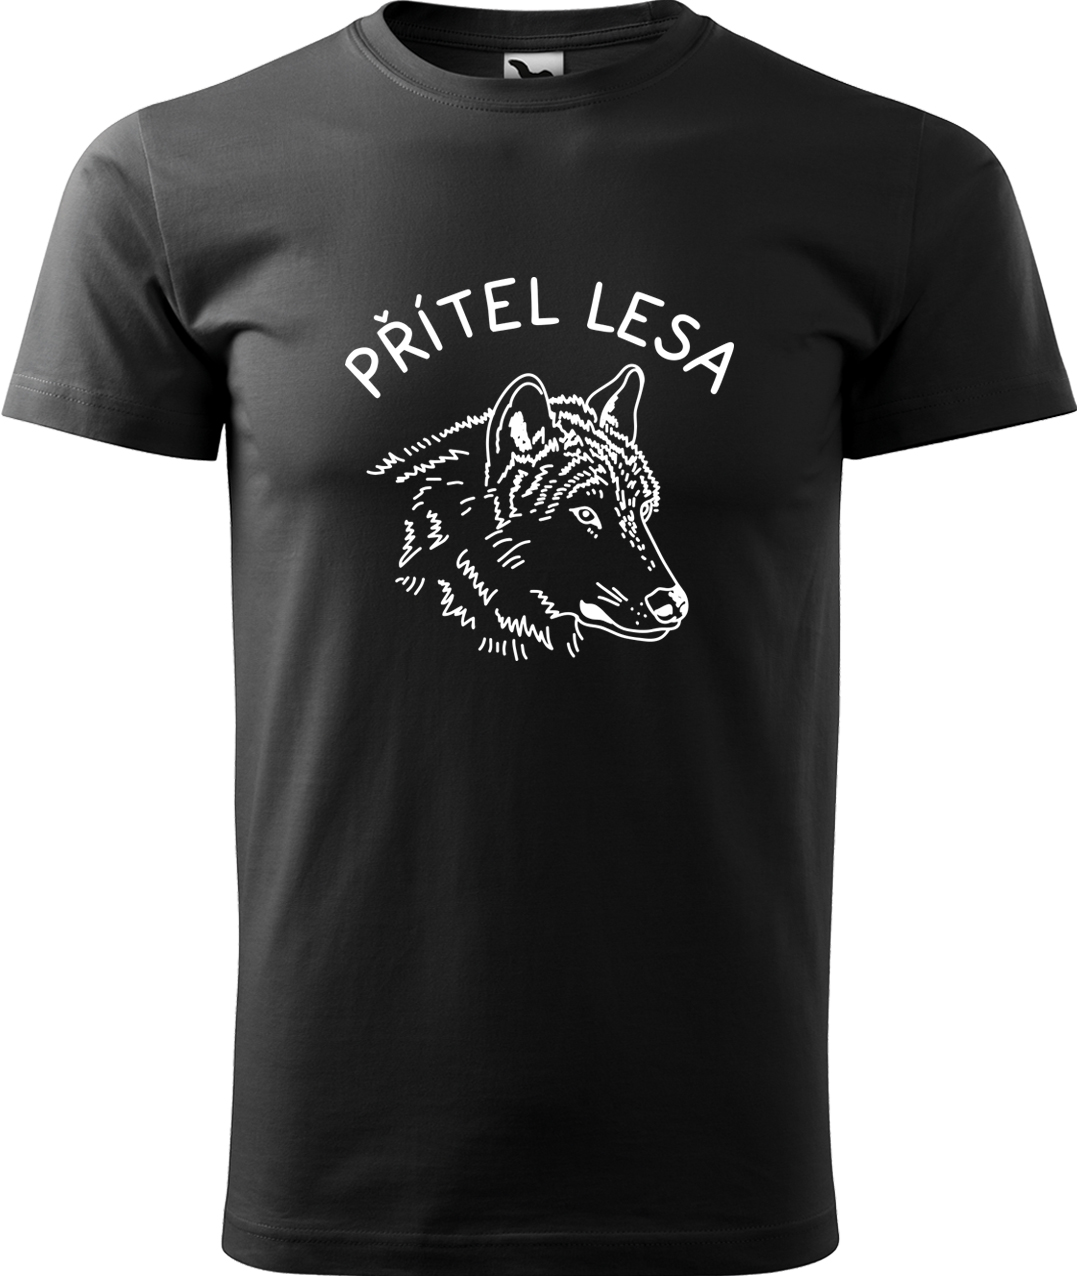 Pánské tričko s vlkem - Přítel lesa Velikost: 3XL, Barva: Černá (01), Střih: pánský